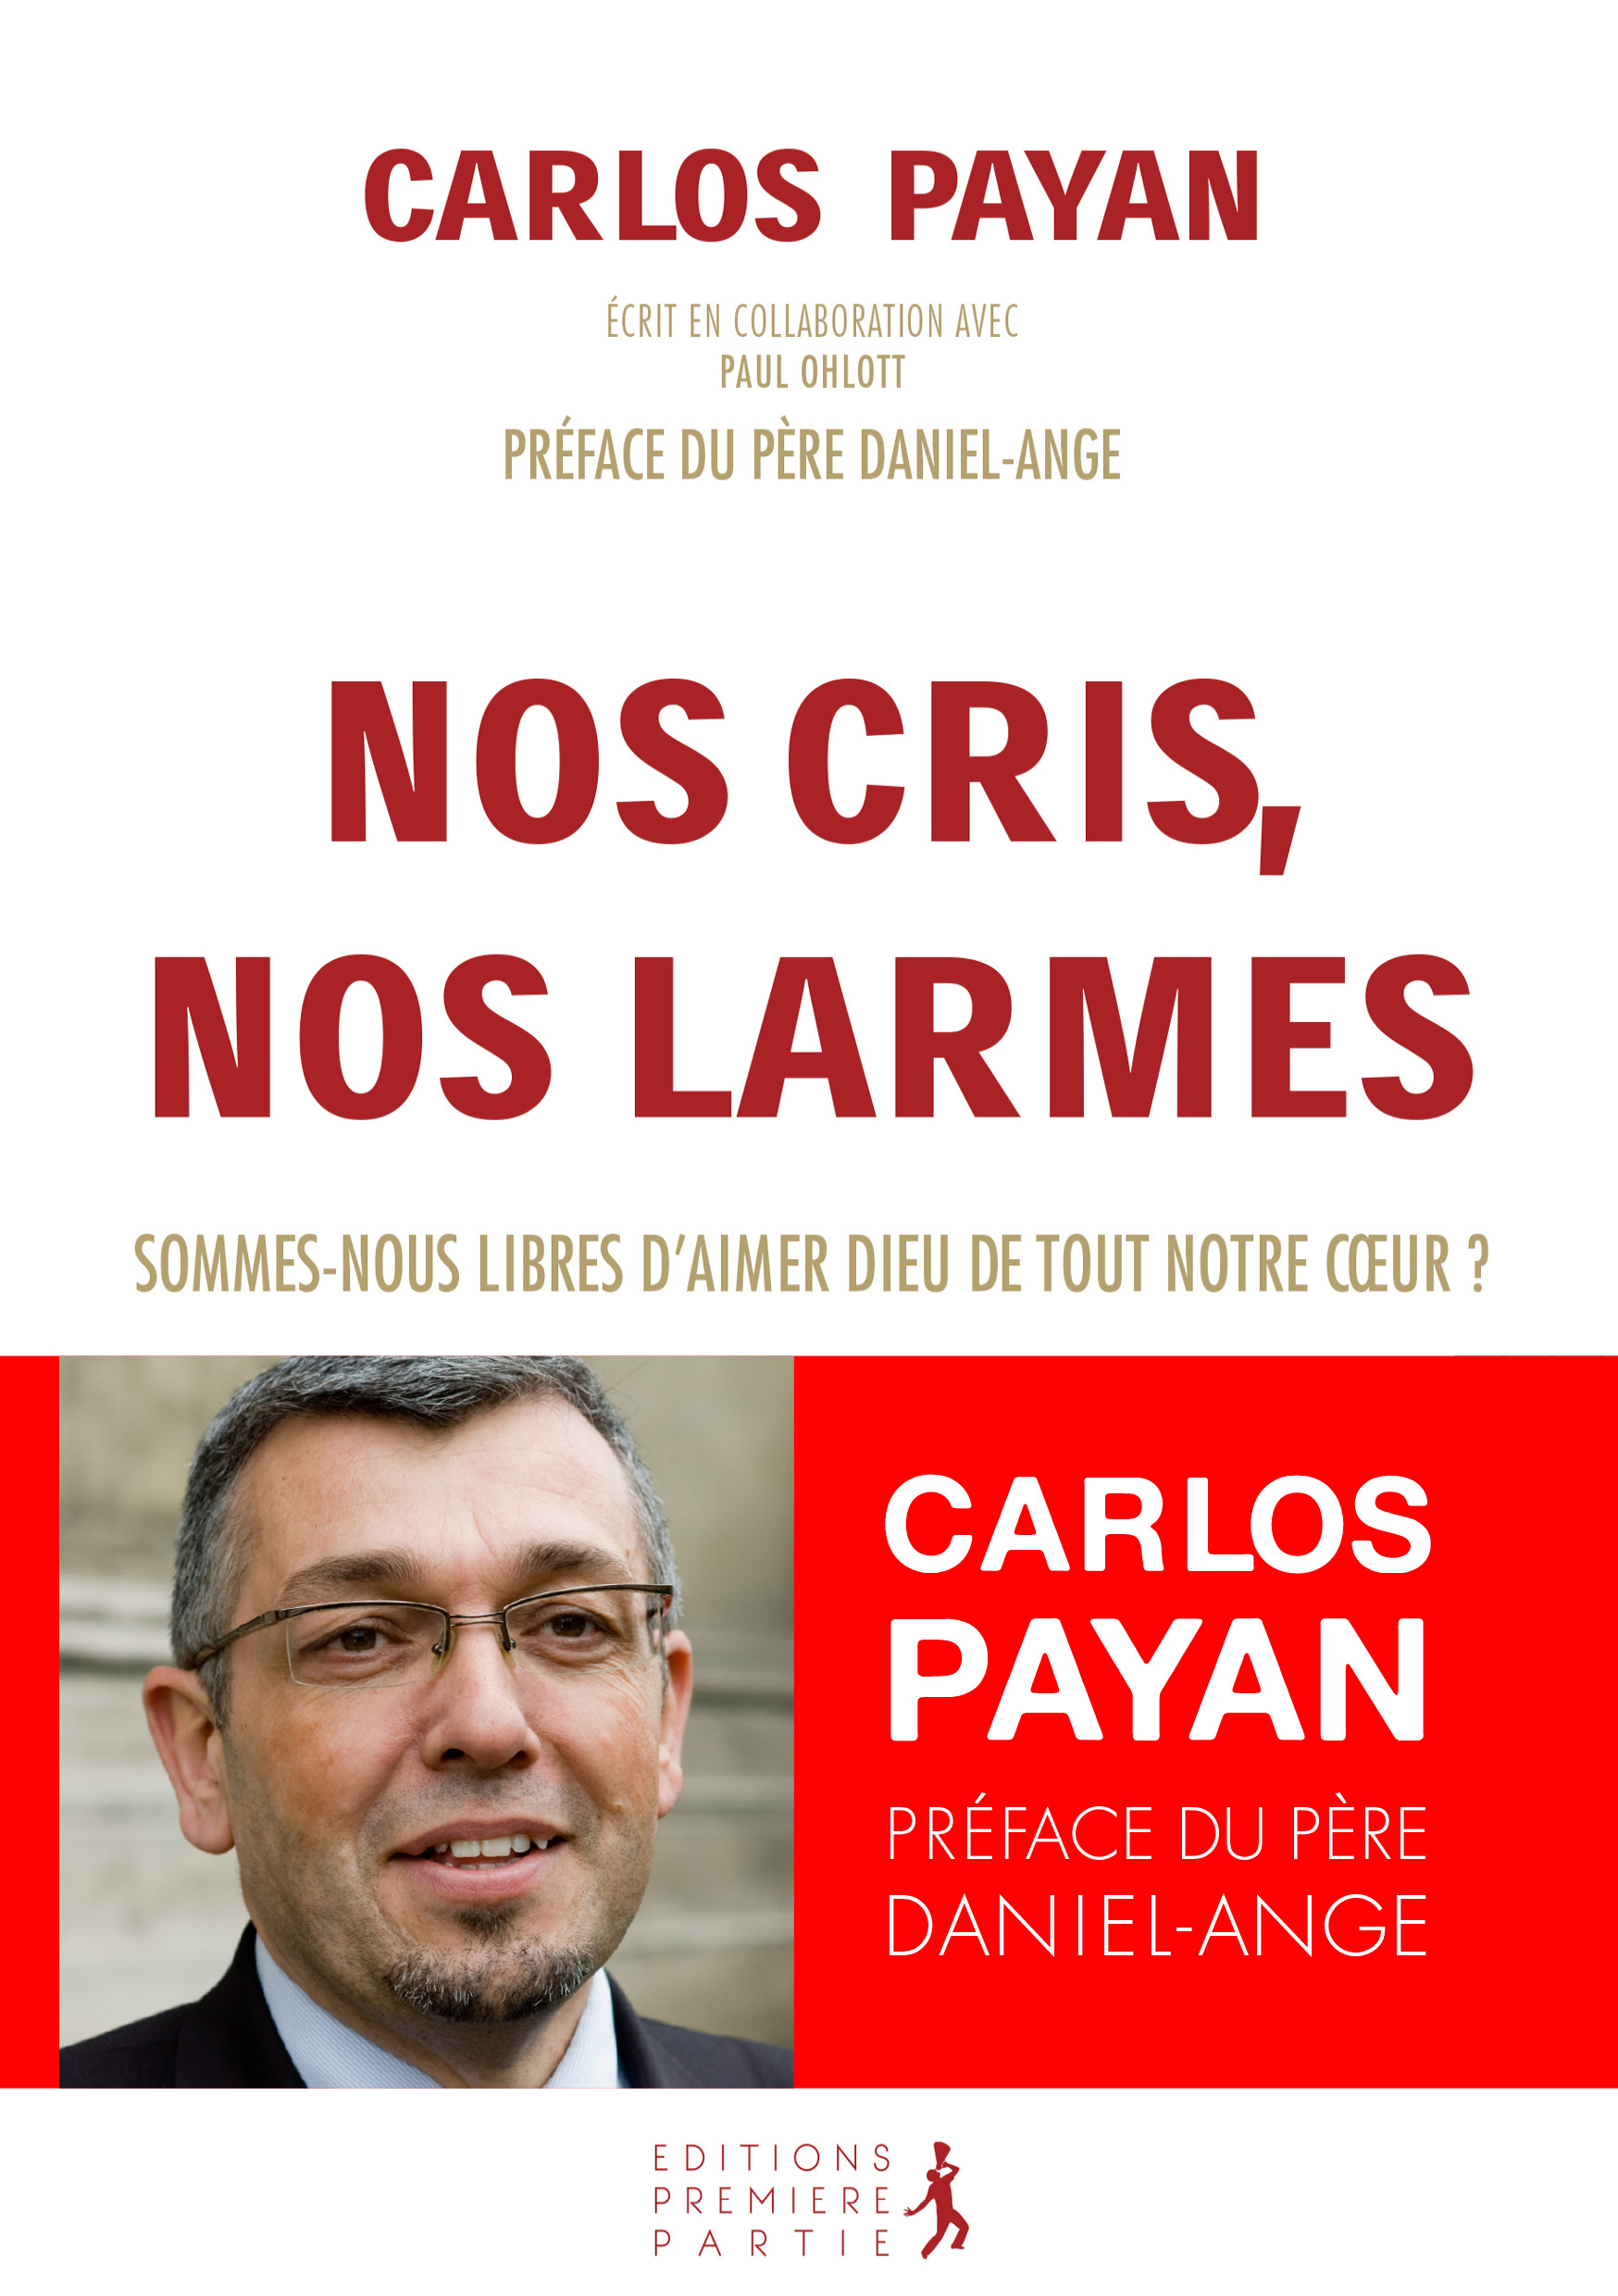 Carlos Payan "Nos cris, nos larmes"